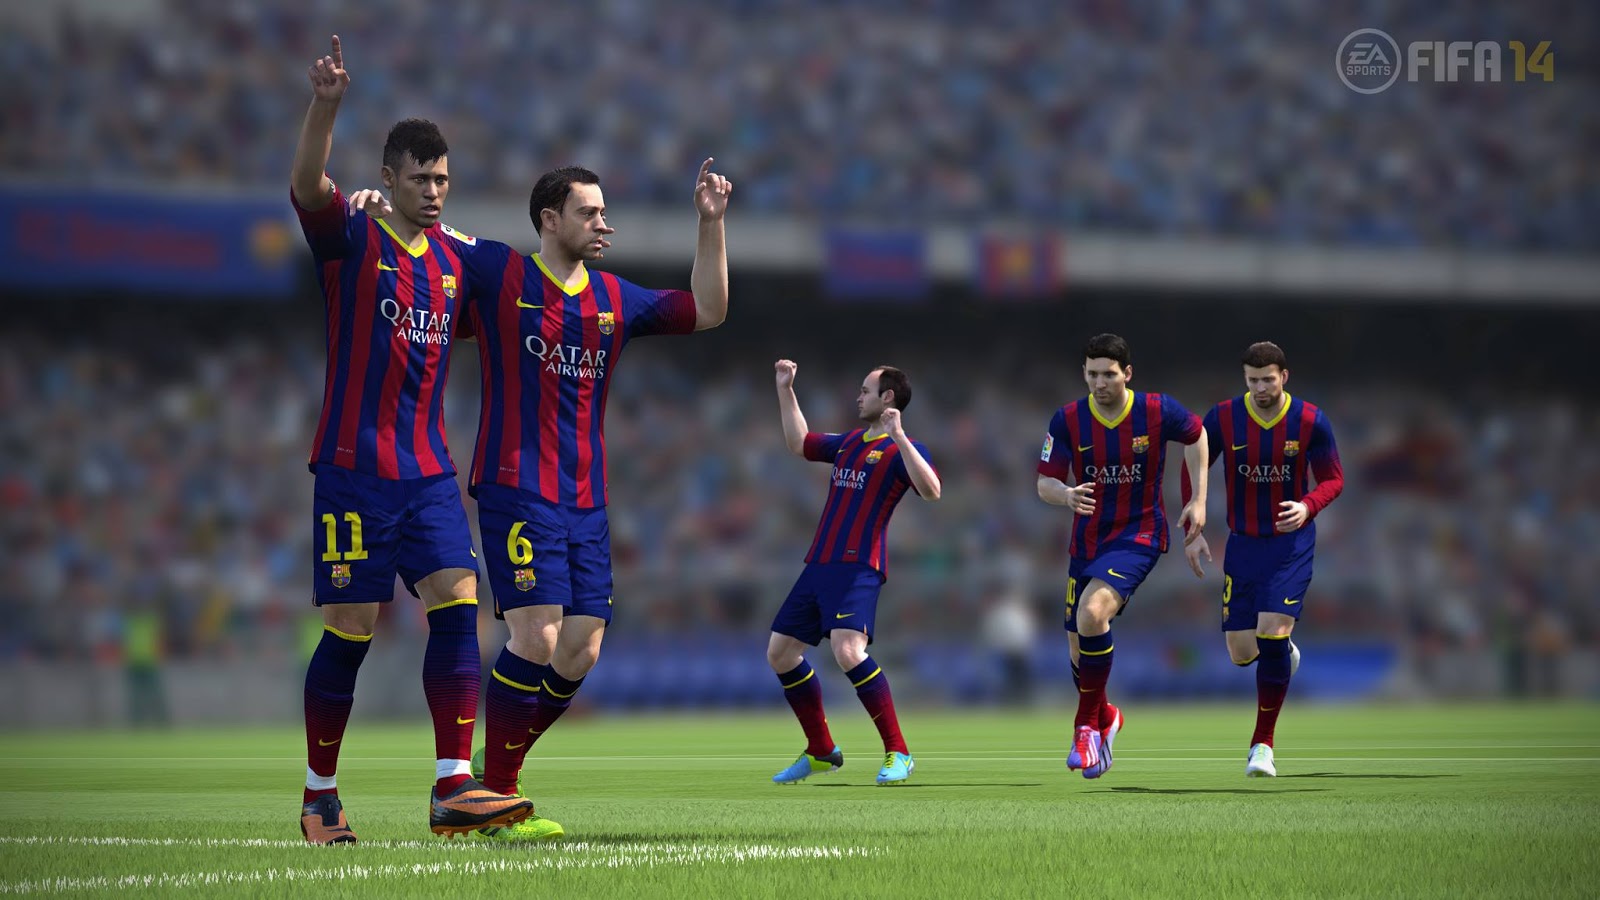 جدول هفتگی پر فروش ترین بازی های بریتانیا | بازگشت دوباره FIFA 14 به صدر جدول - گیمفا